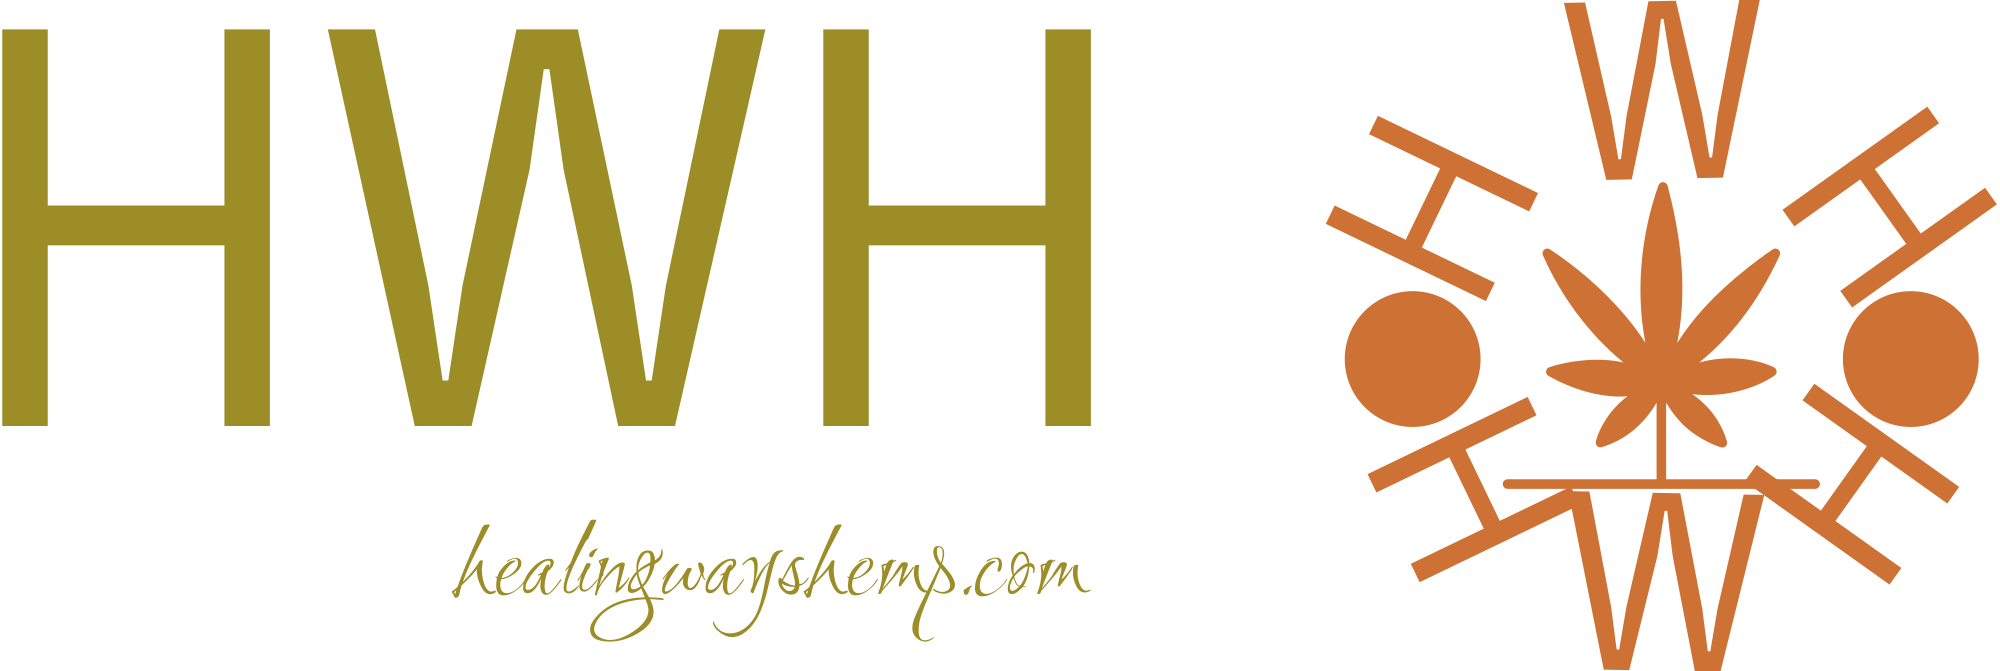 hwh_logo